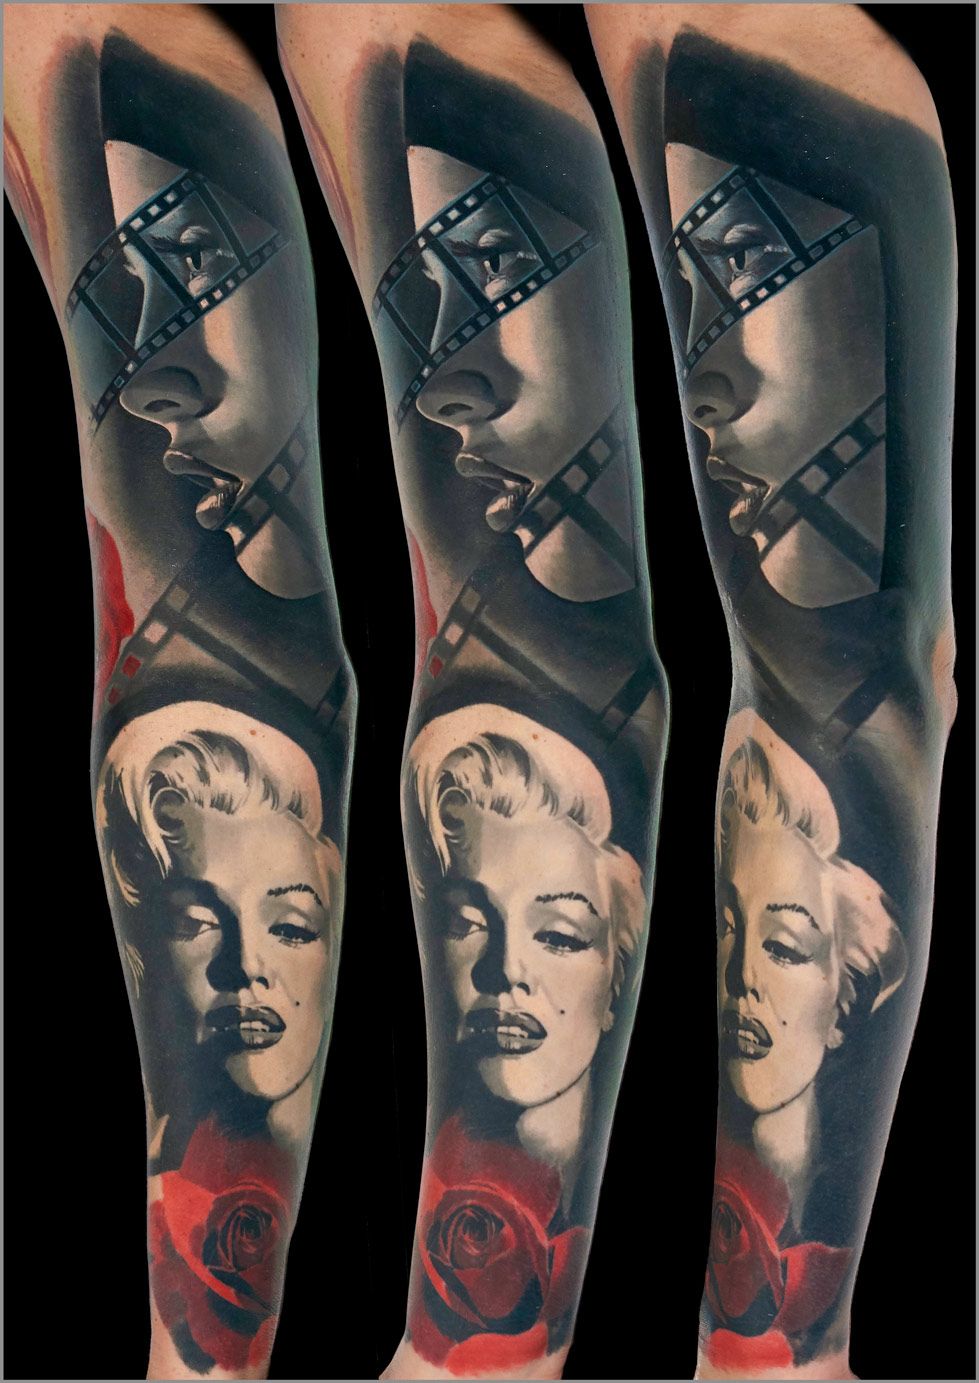 Marilyn Monroe's portrait tattoo.